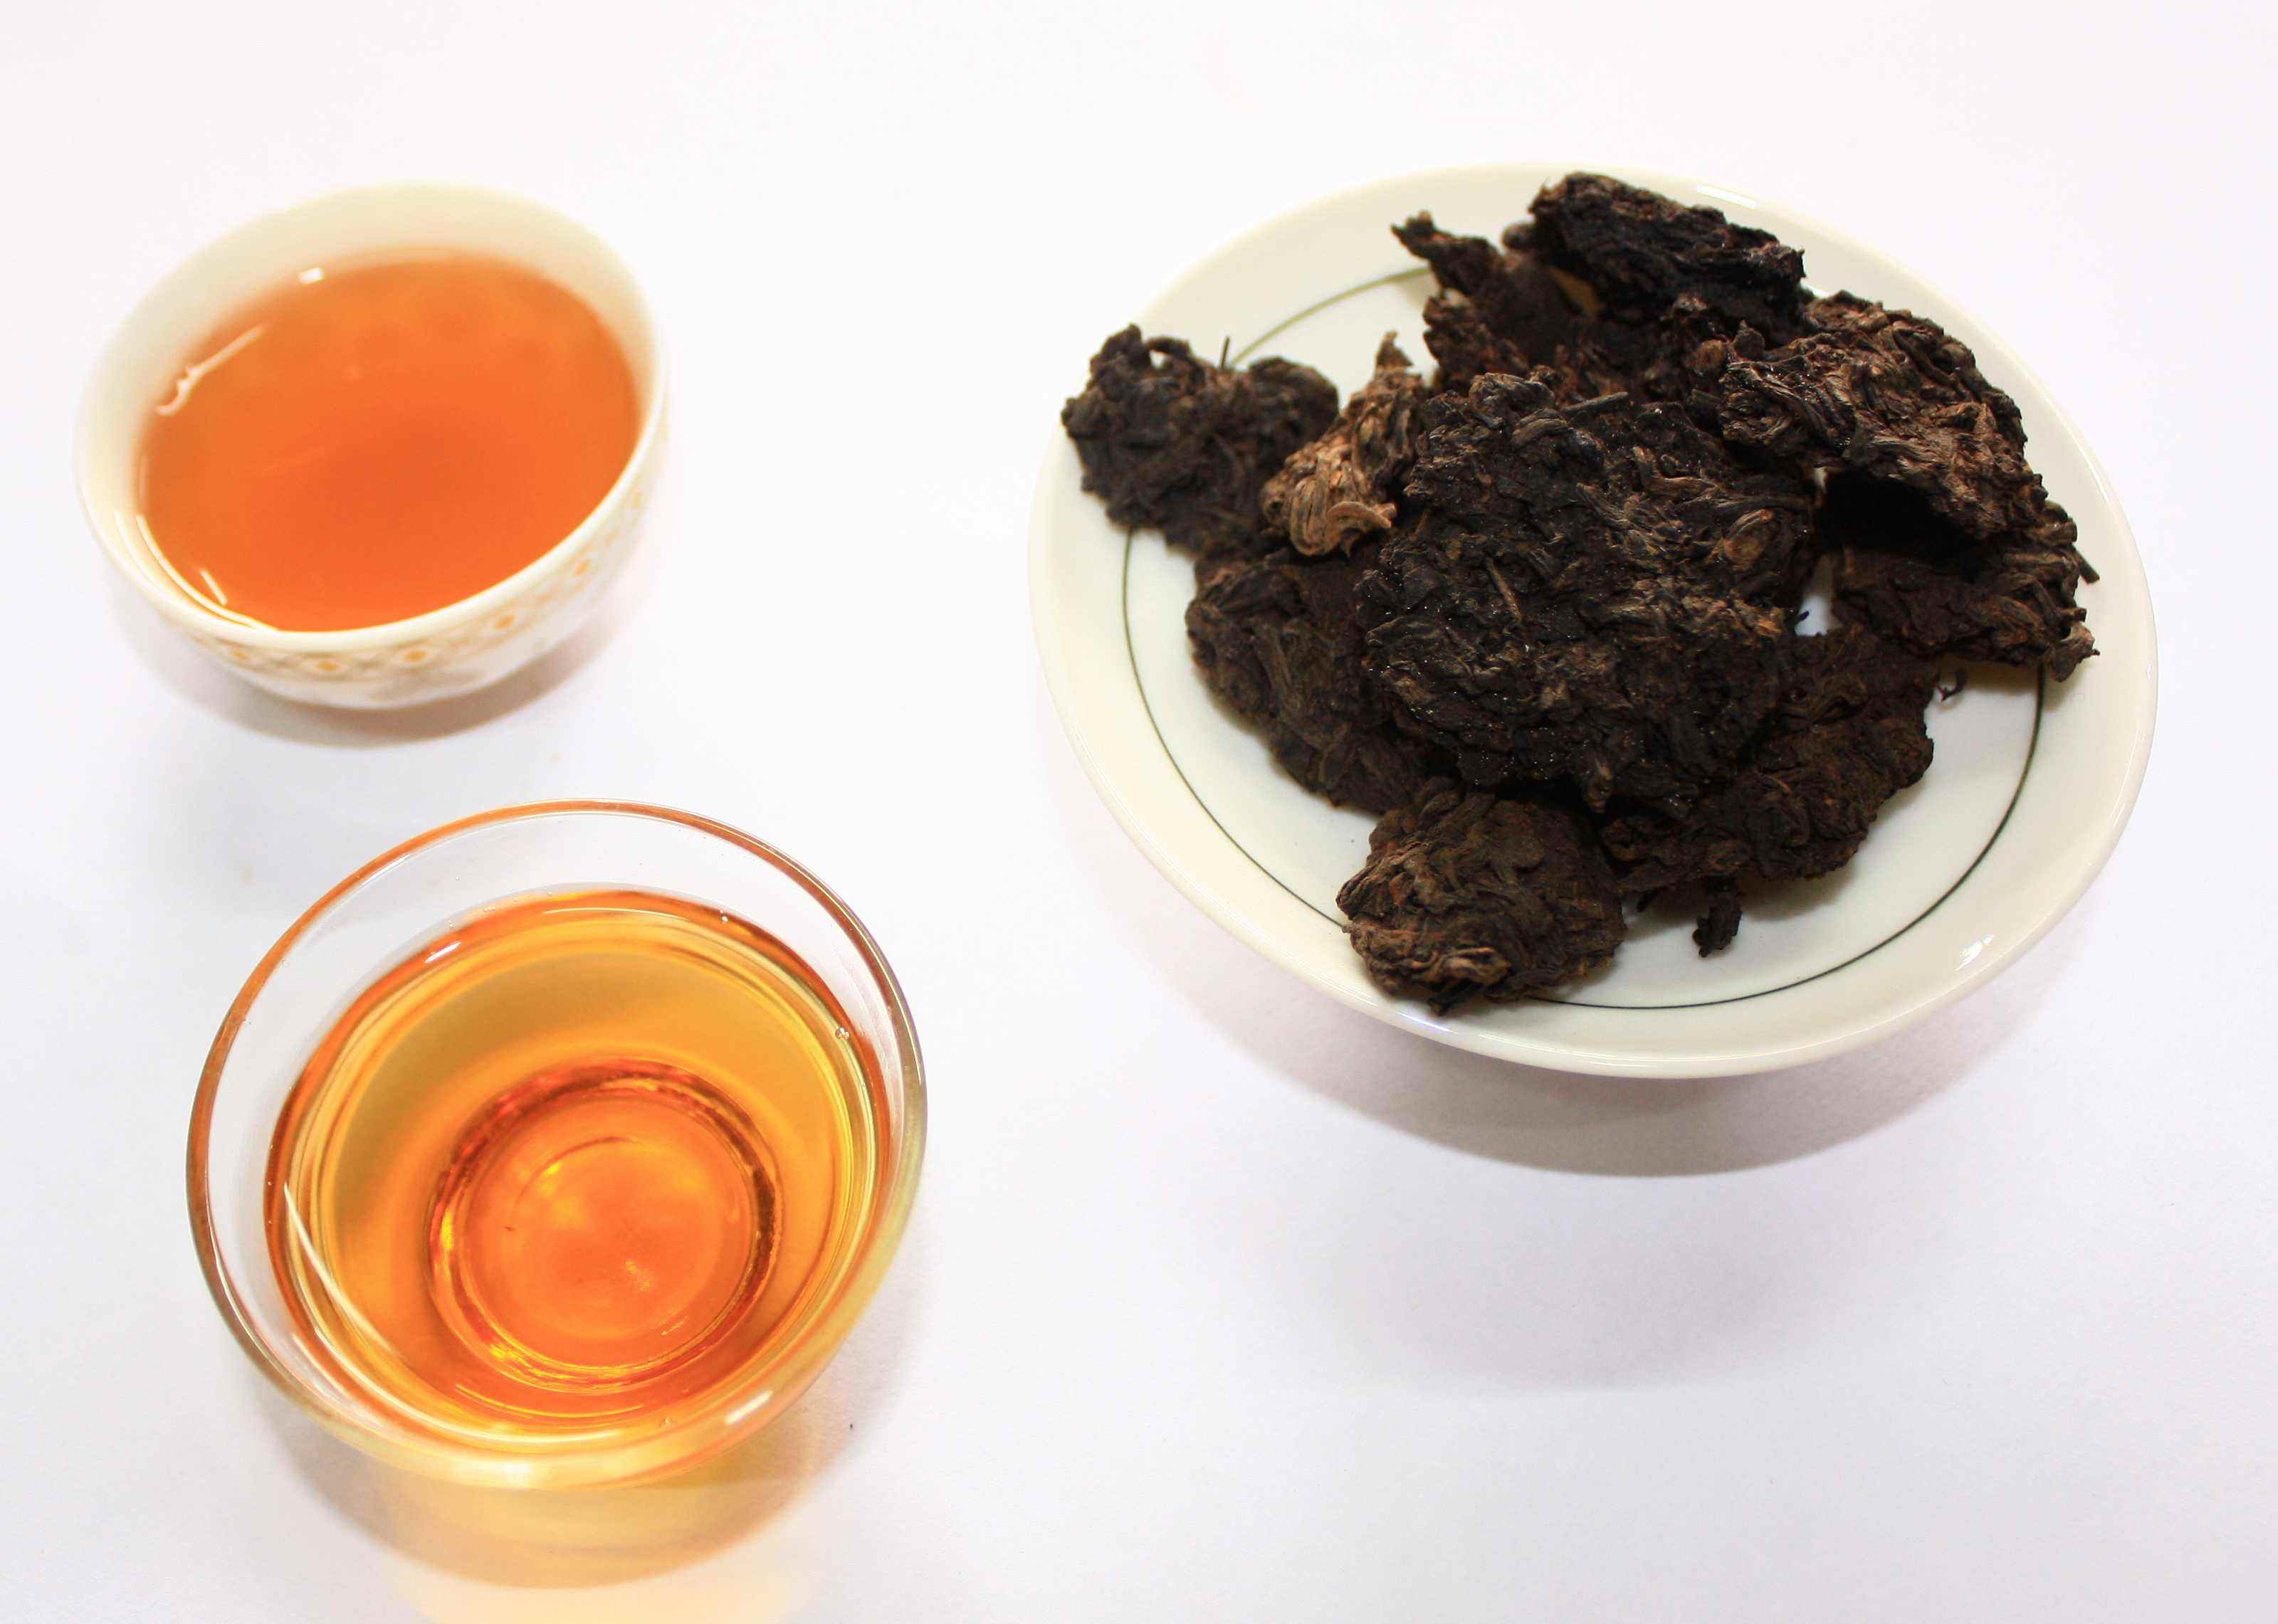 普洱老茶头与普洱茶、和一般熟茶的区别老茶头怎么挑选